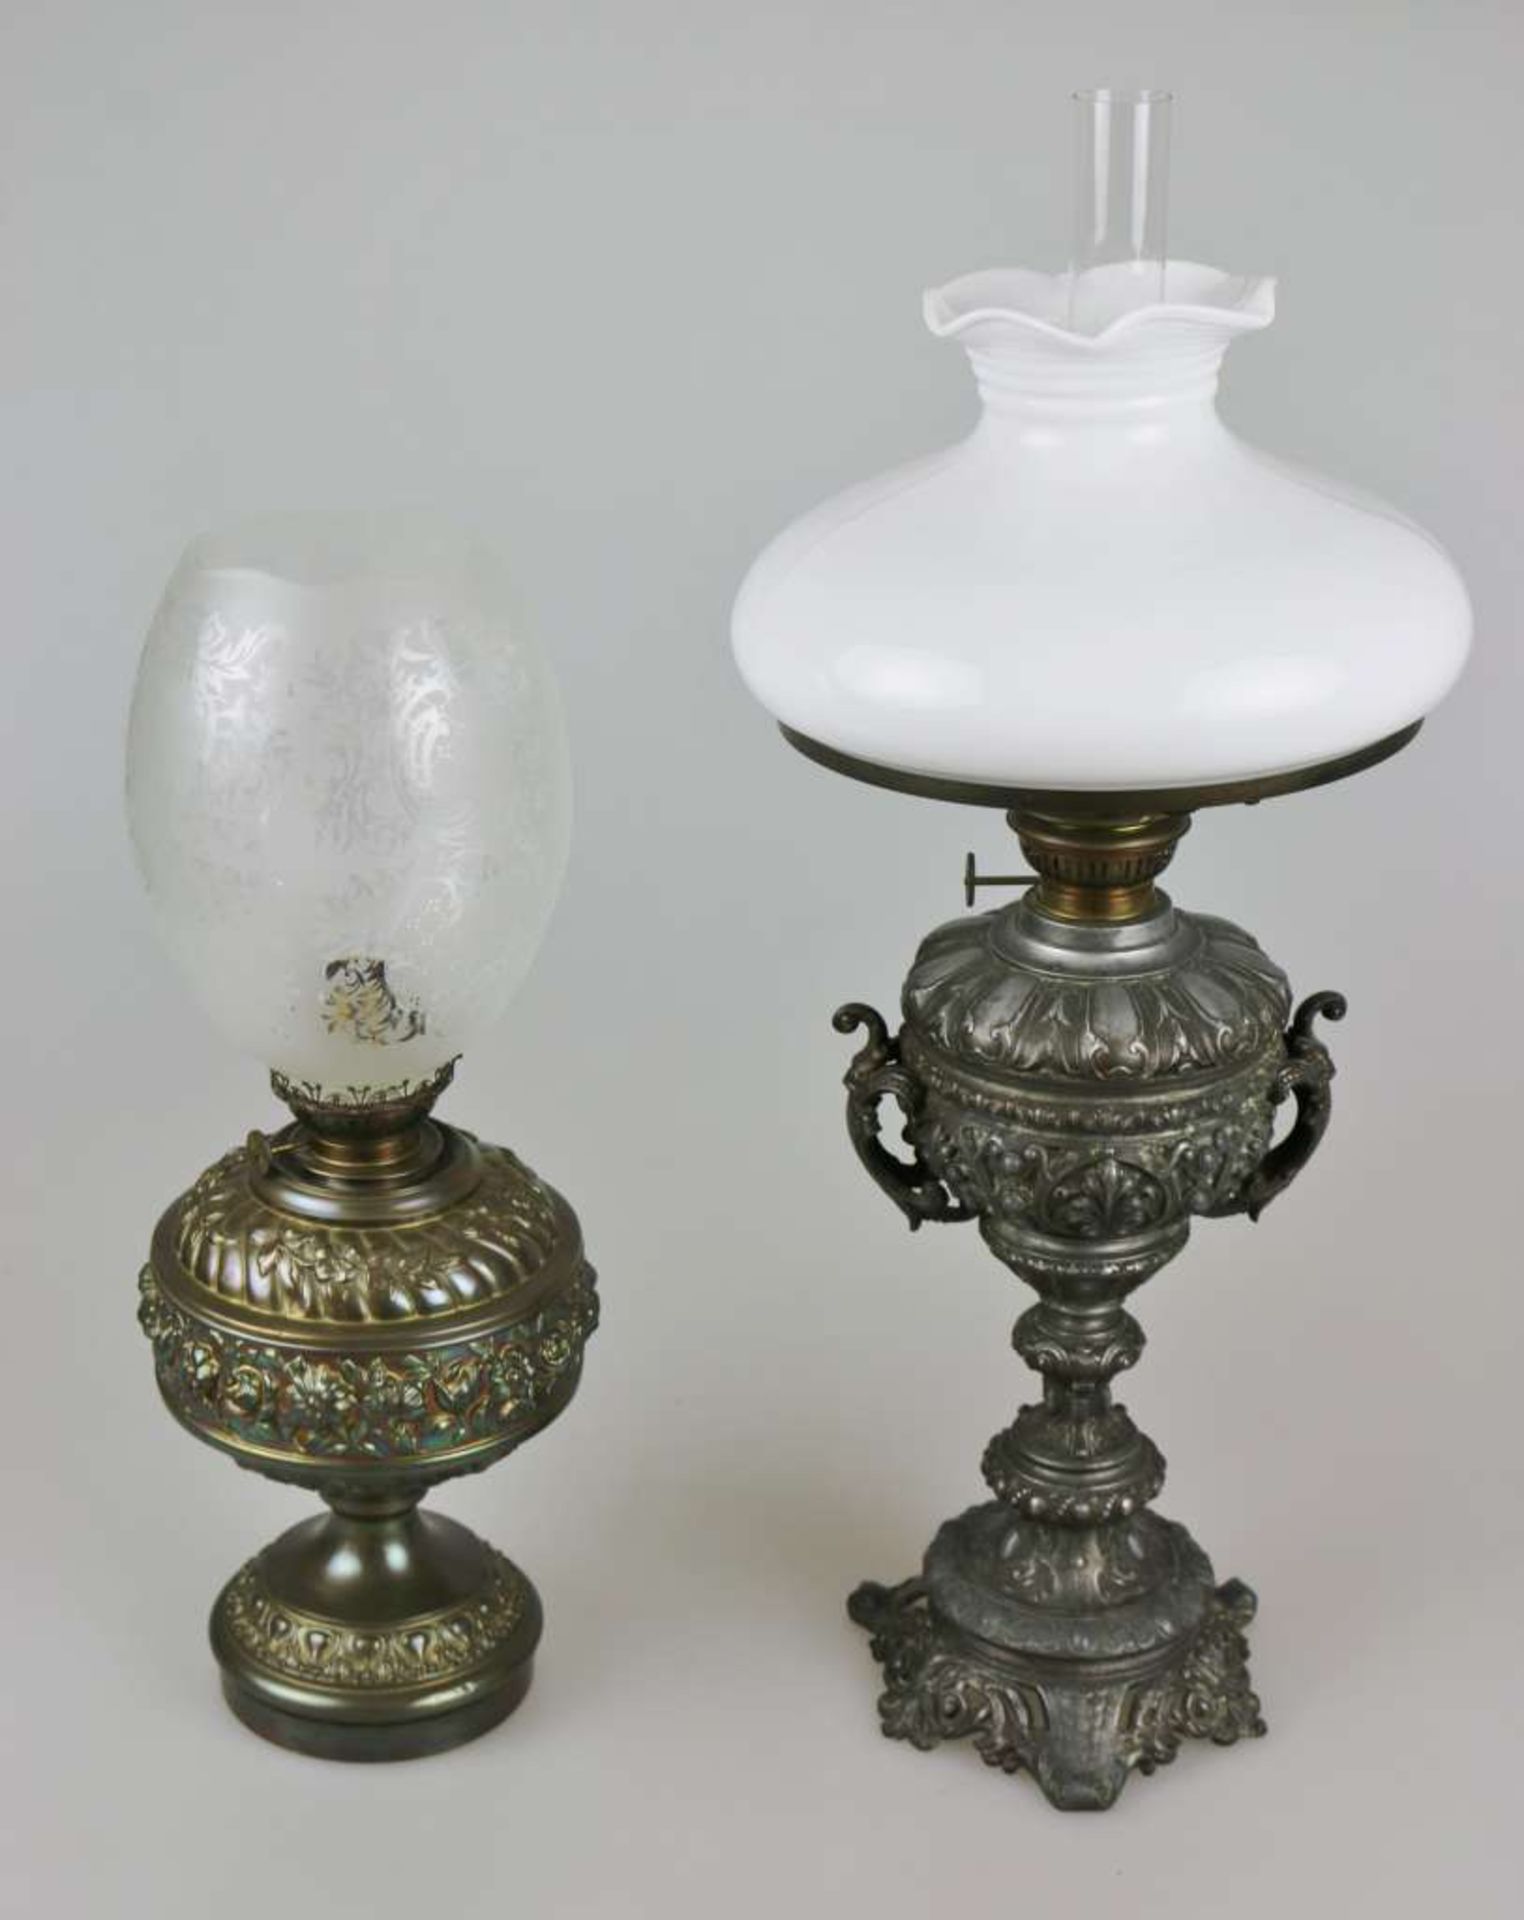 2 Petroleumlampen, wohl um 1900, Metallguss mit dunkler Patina. Runder, profilierter und